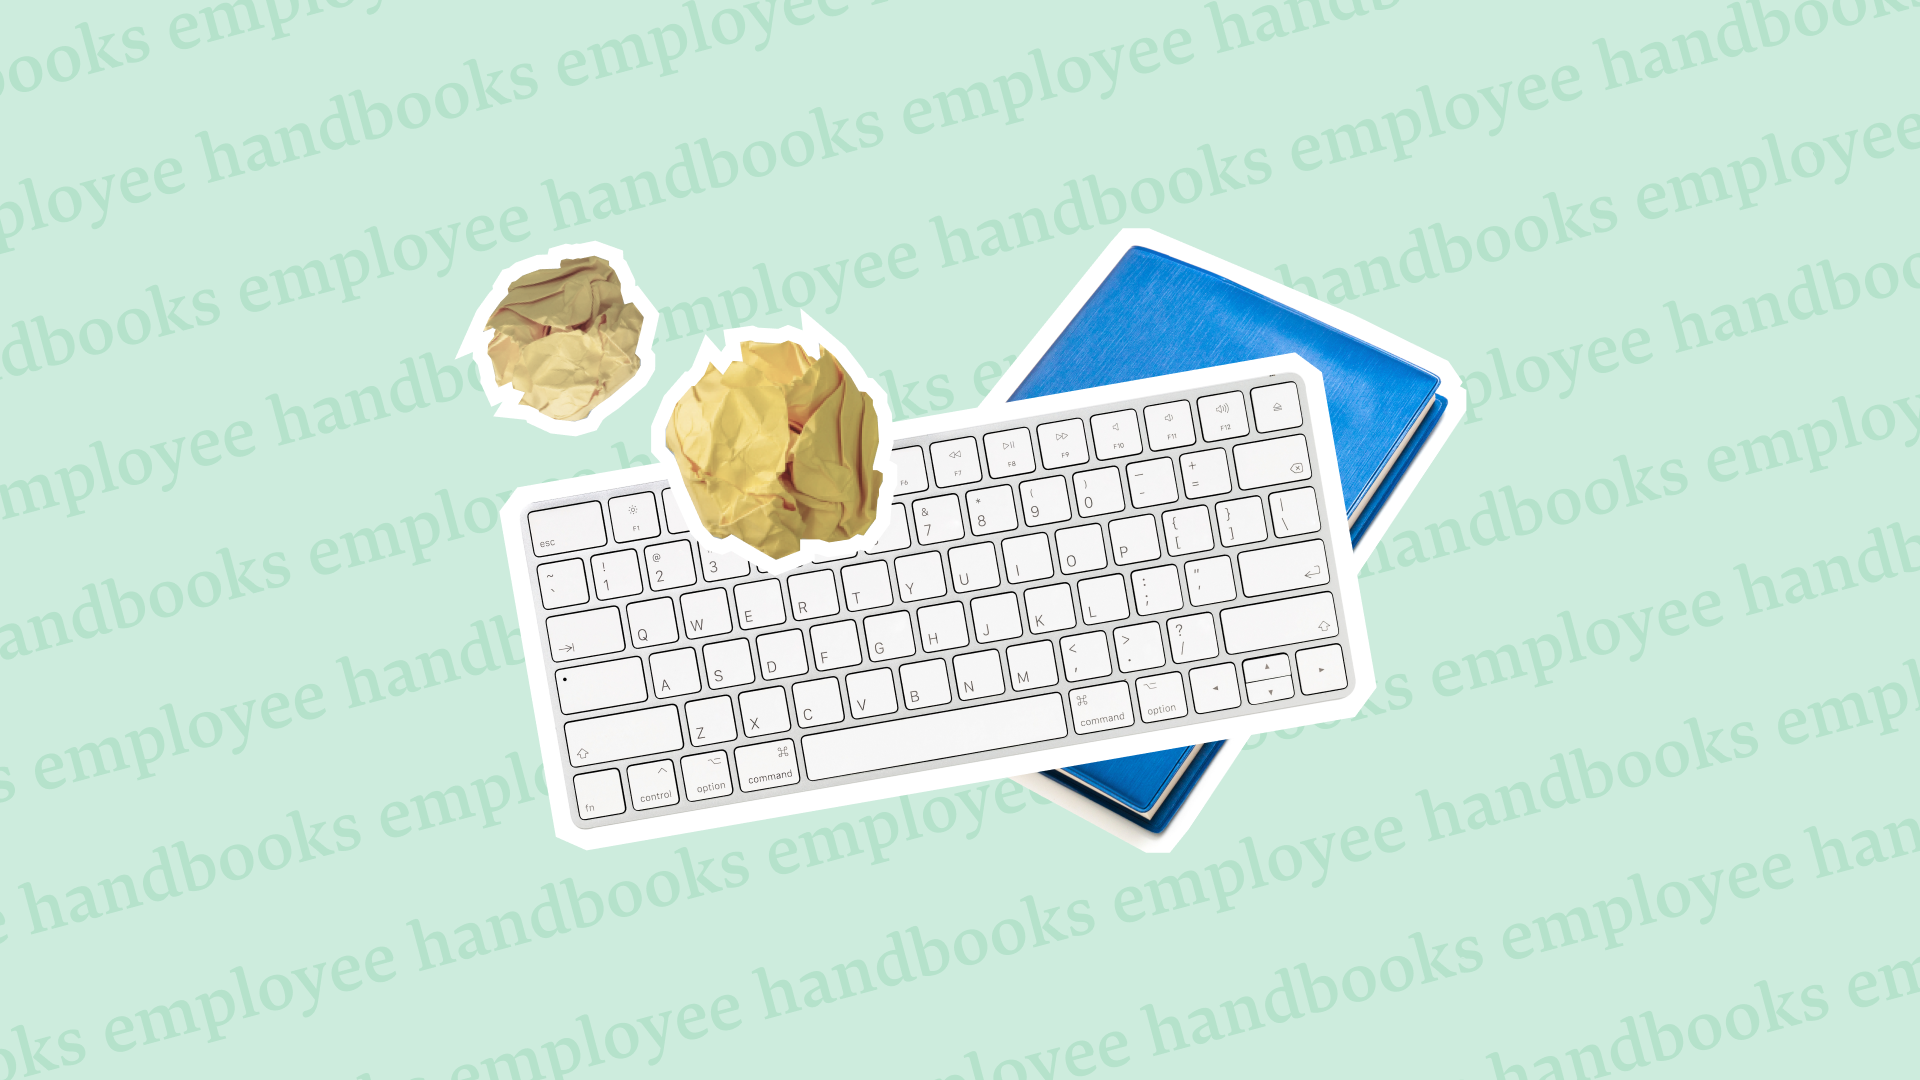 Blog - Hero - employee-handbook-how-to